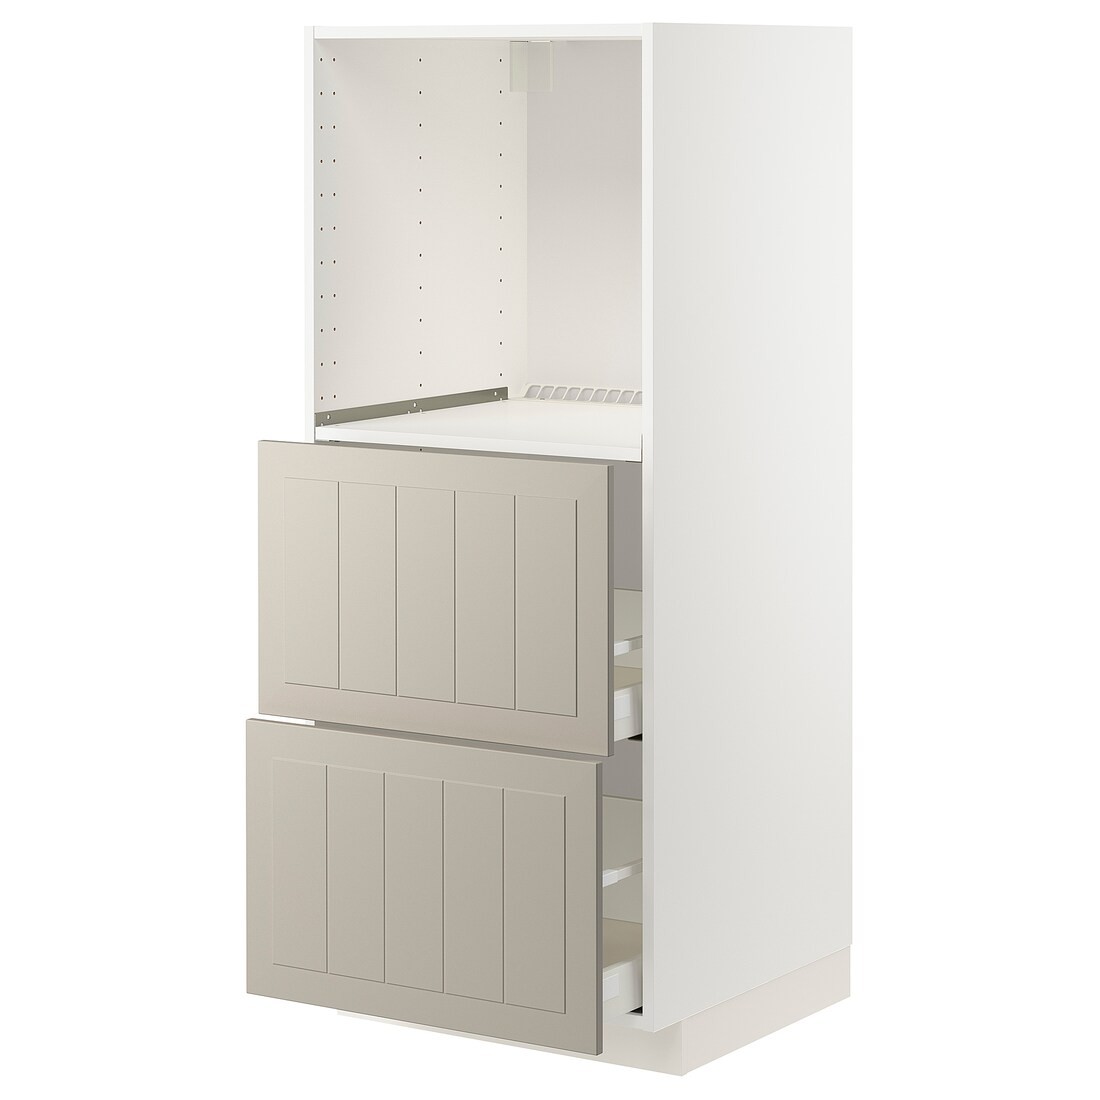 IKEA METOD МЕТОД / MAXIMERA МАКСИМЕРА Высокий шкаф с 2 ящиками для духовки, белый / Stensund бежевый, 60x60x140 см 89407925 894.079.25